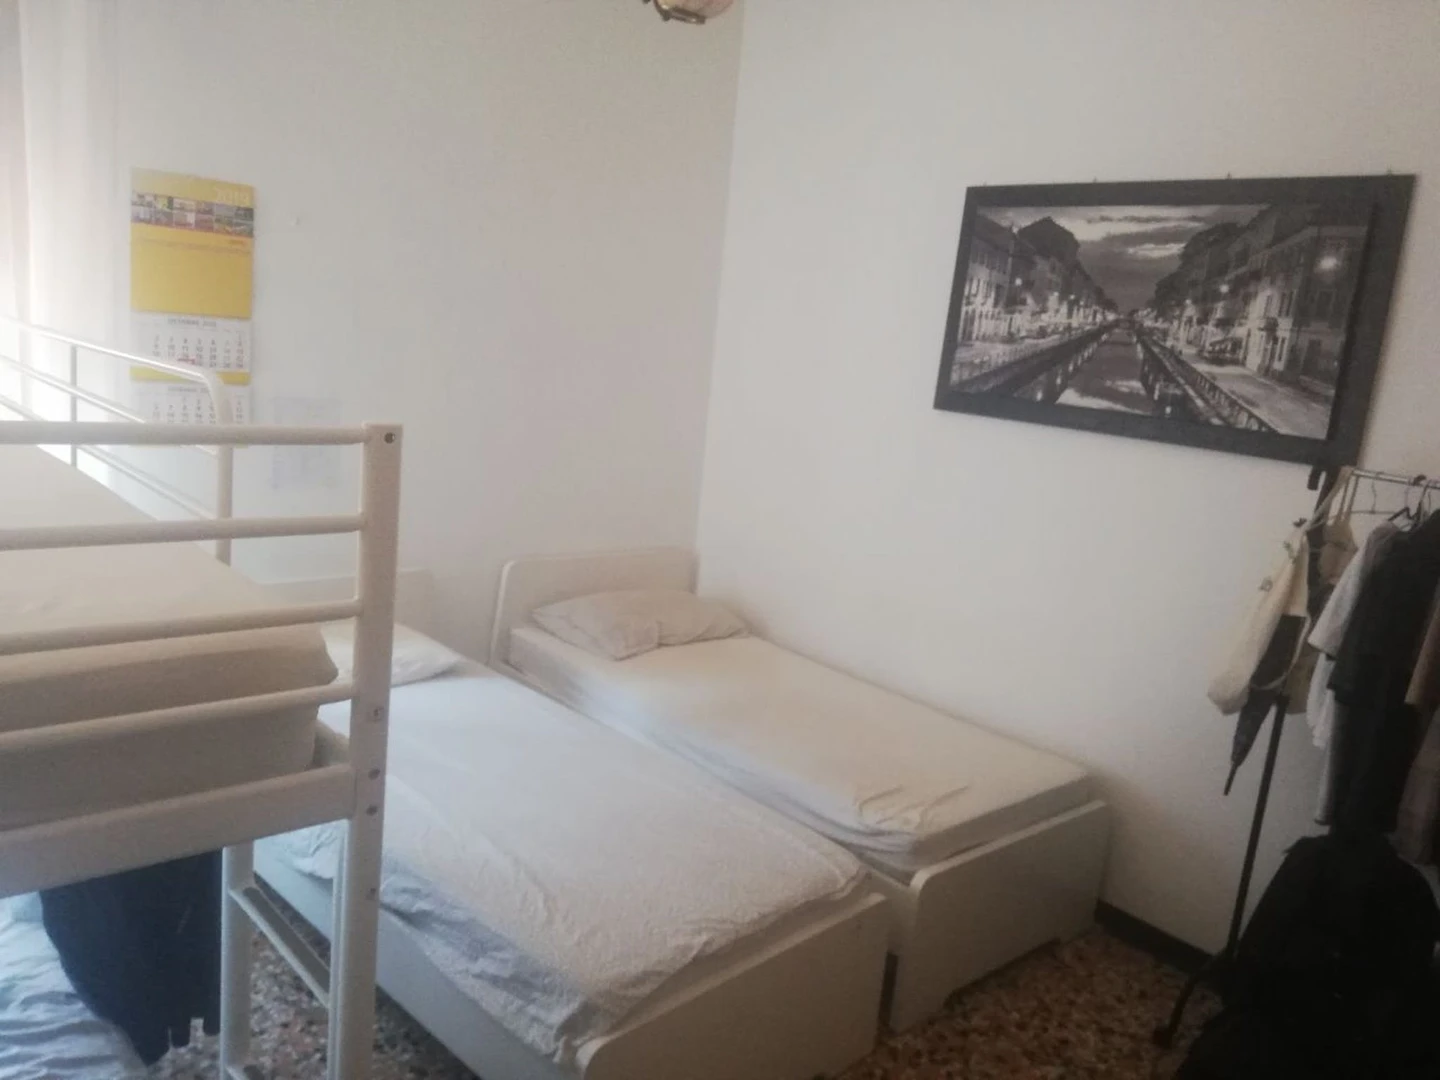 Stanza in condivisione in un appartamento di 3 camere da letto Milano